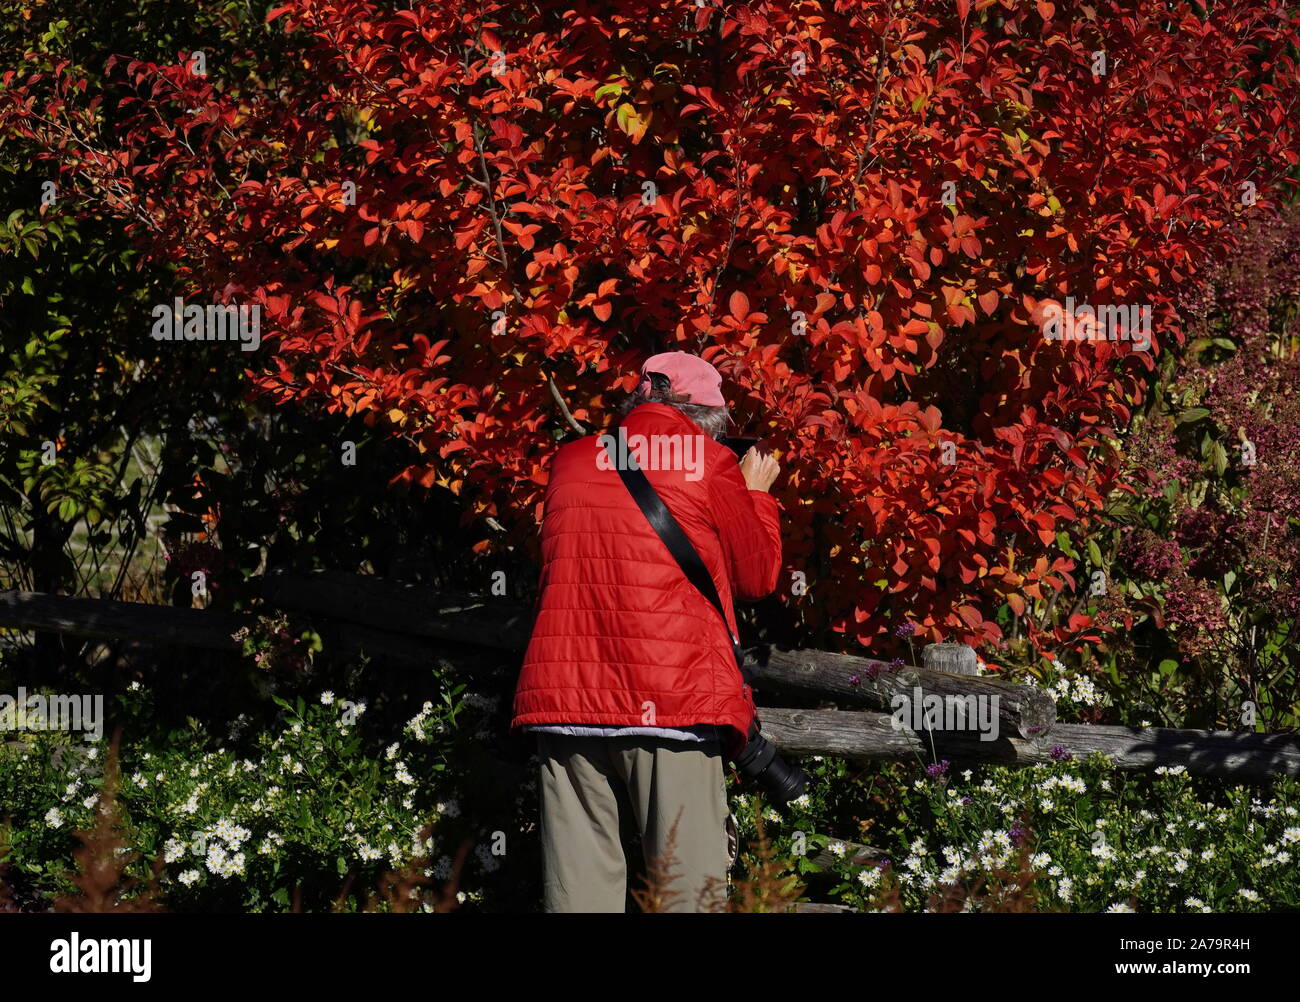 Boothbay, ME / USA - Le 19 octobre 2019 Photographe : veste rouge en gros plan prise de photos de l'automne feuillage qui est la même couleur Banque D'Images